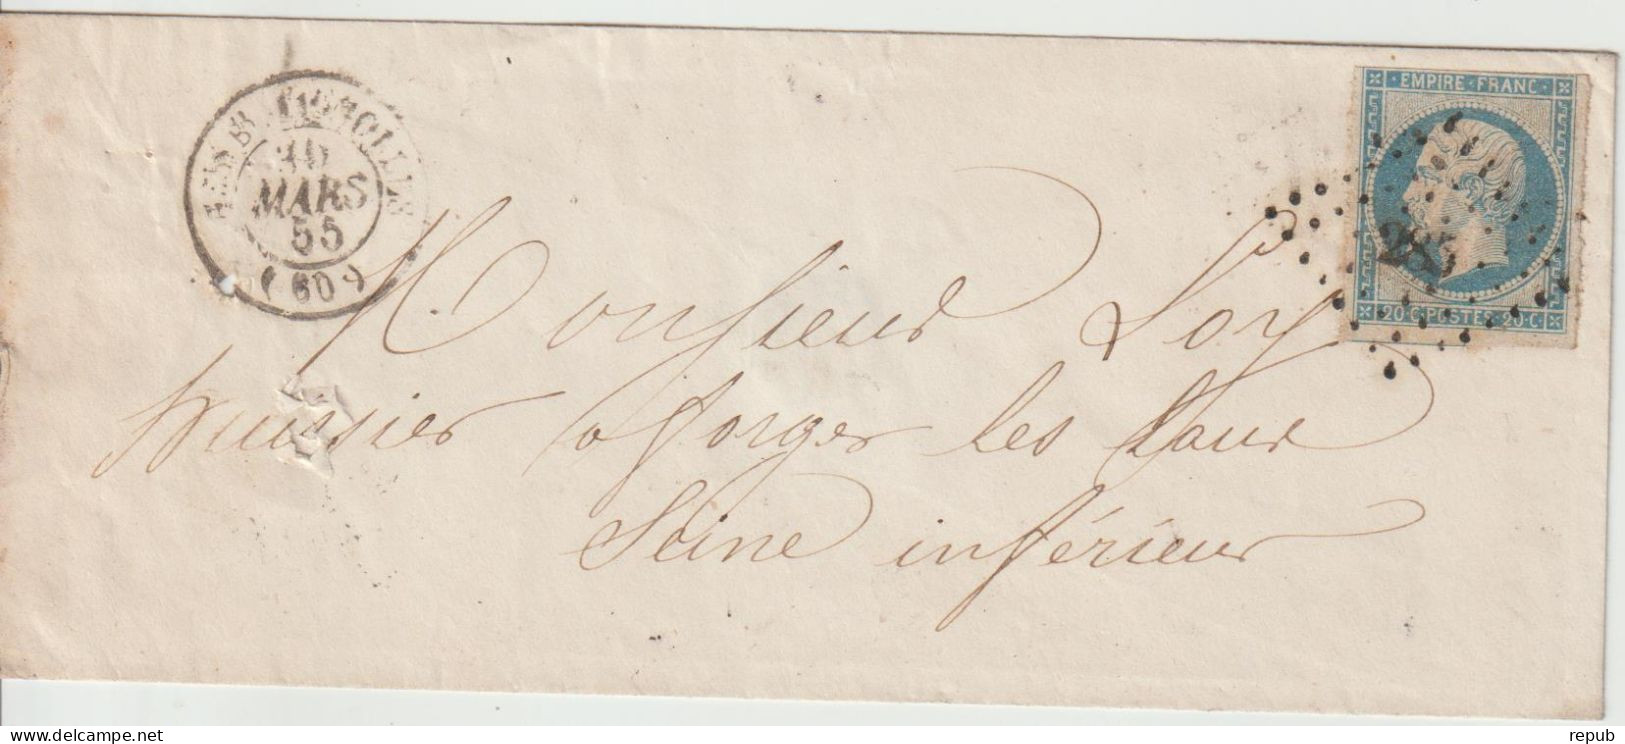 France Lettre 1865 De Paris Batignolles PC285  Pour Forges (76) - 1849-1876: Classic Period